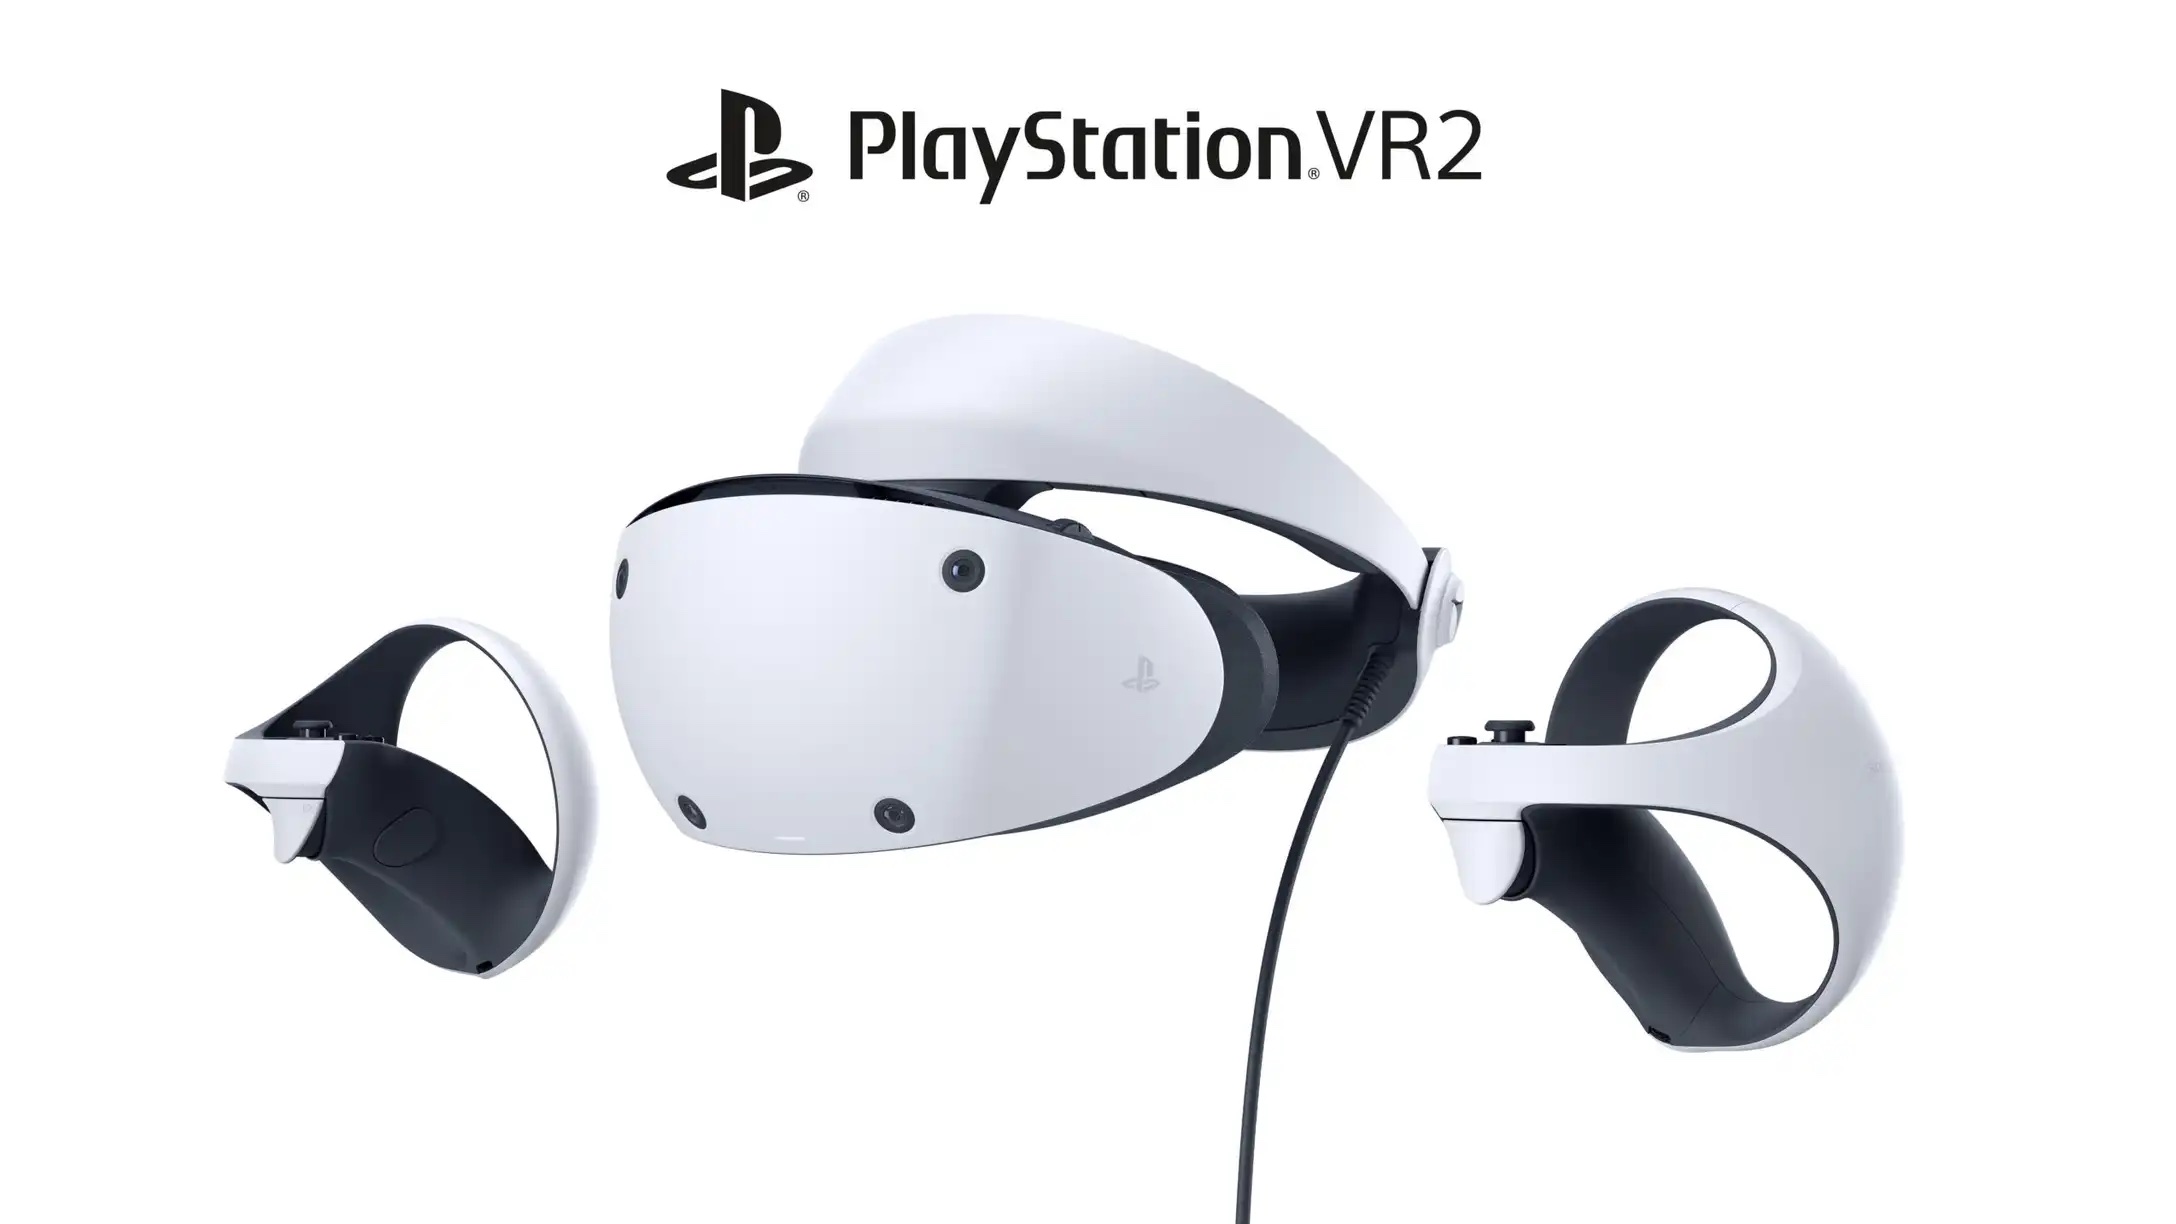 日本製/今治産 プレイステーション PS VR2 “Horizon コード使用済み